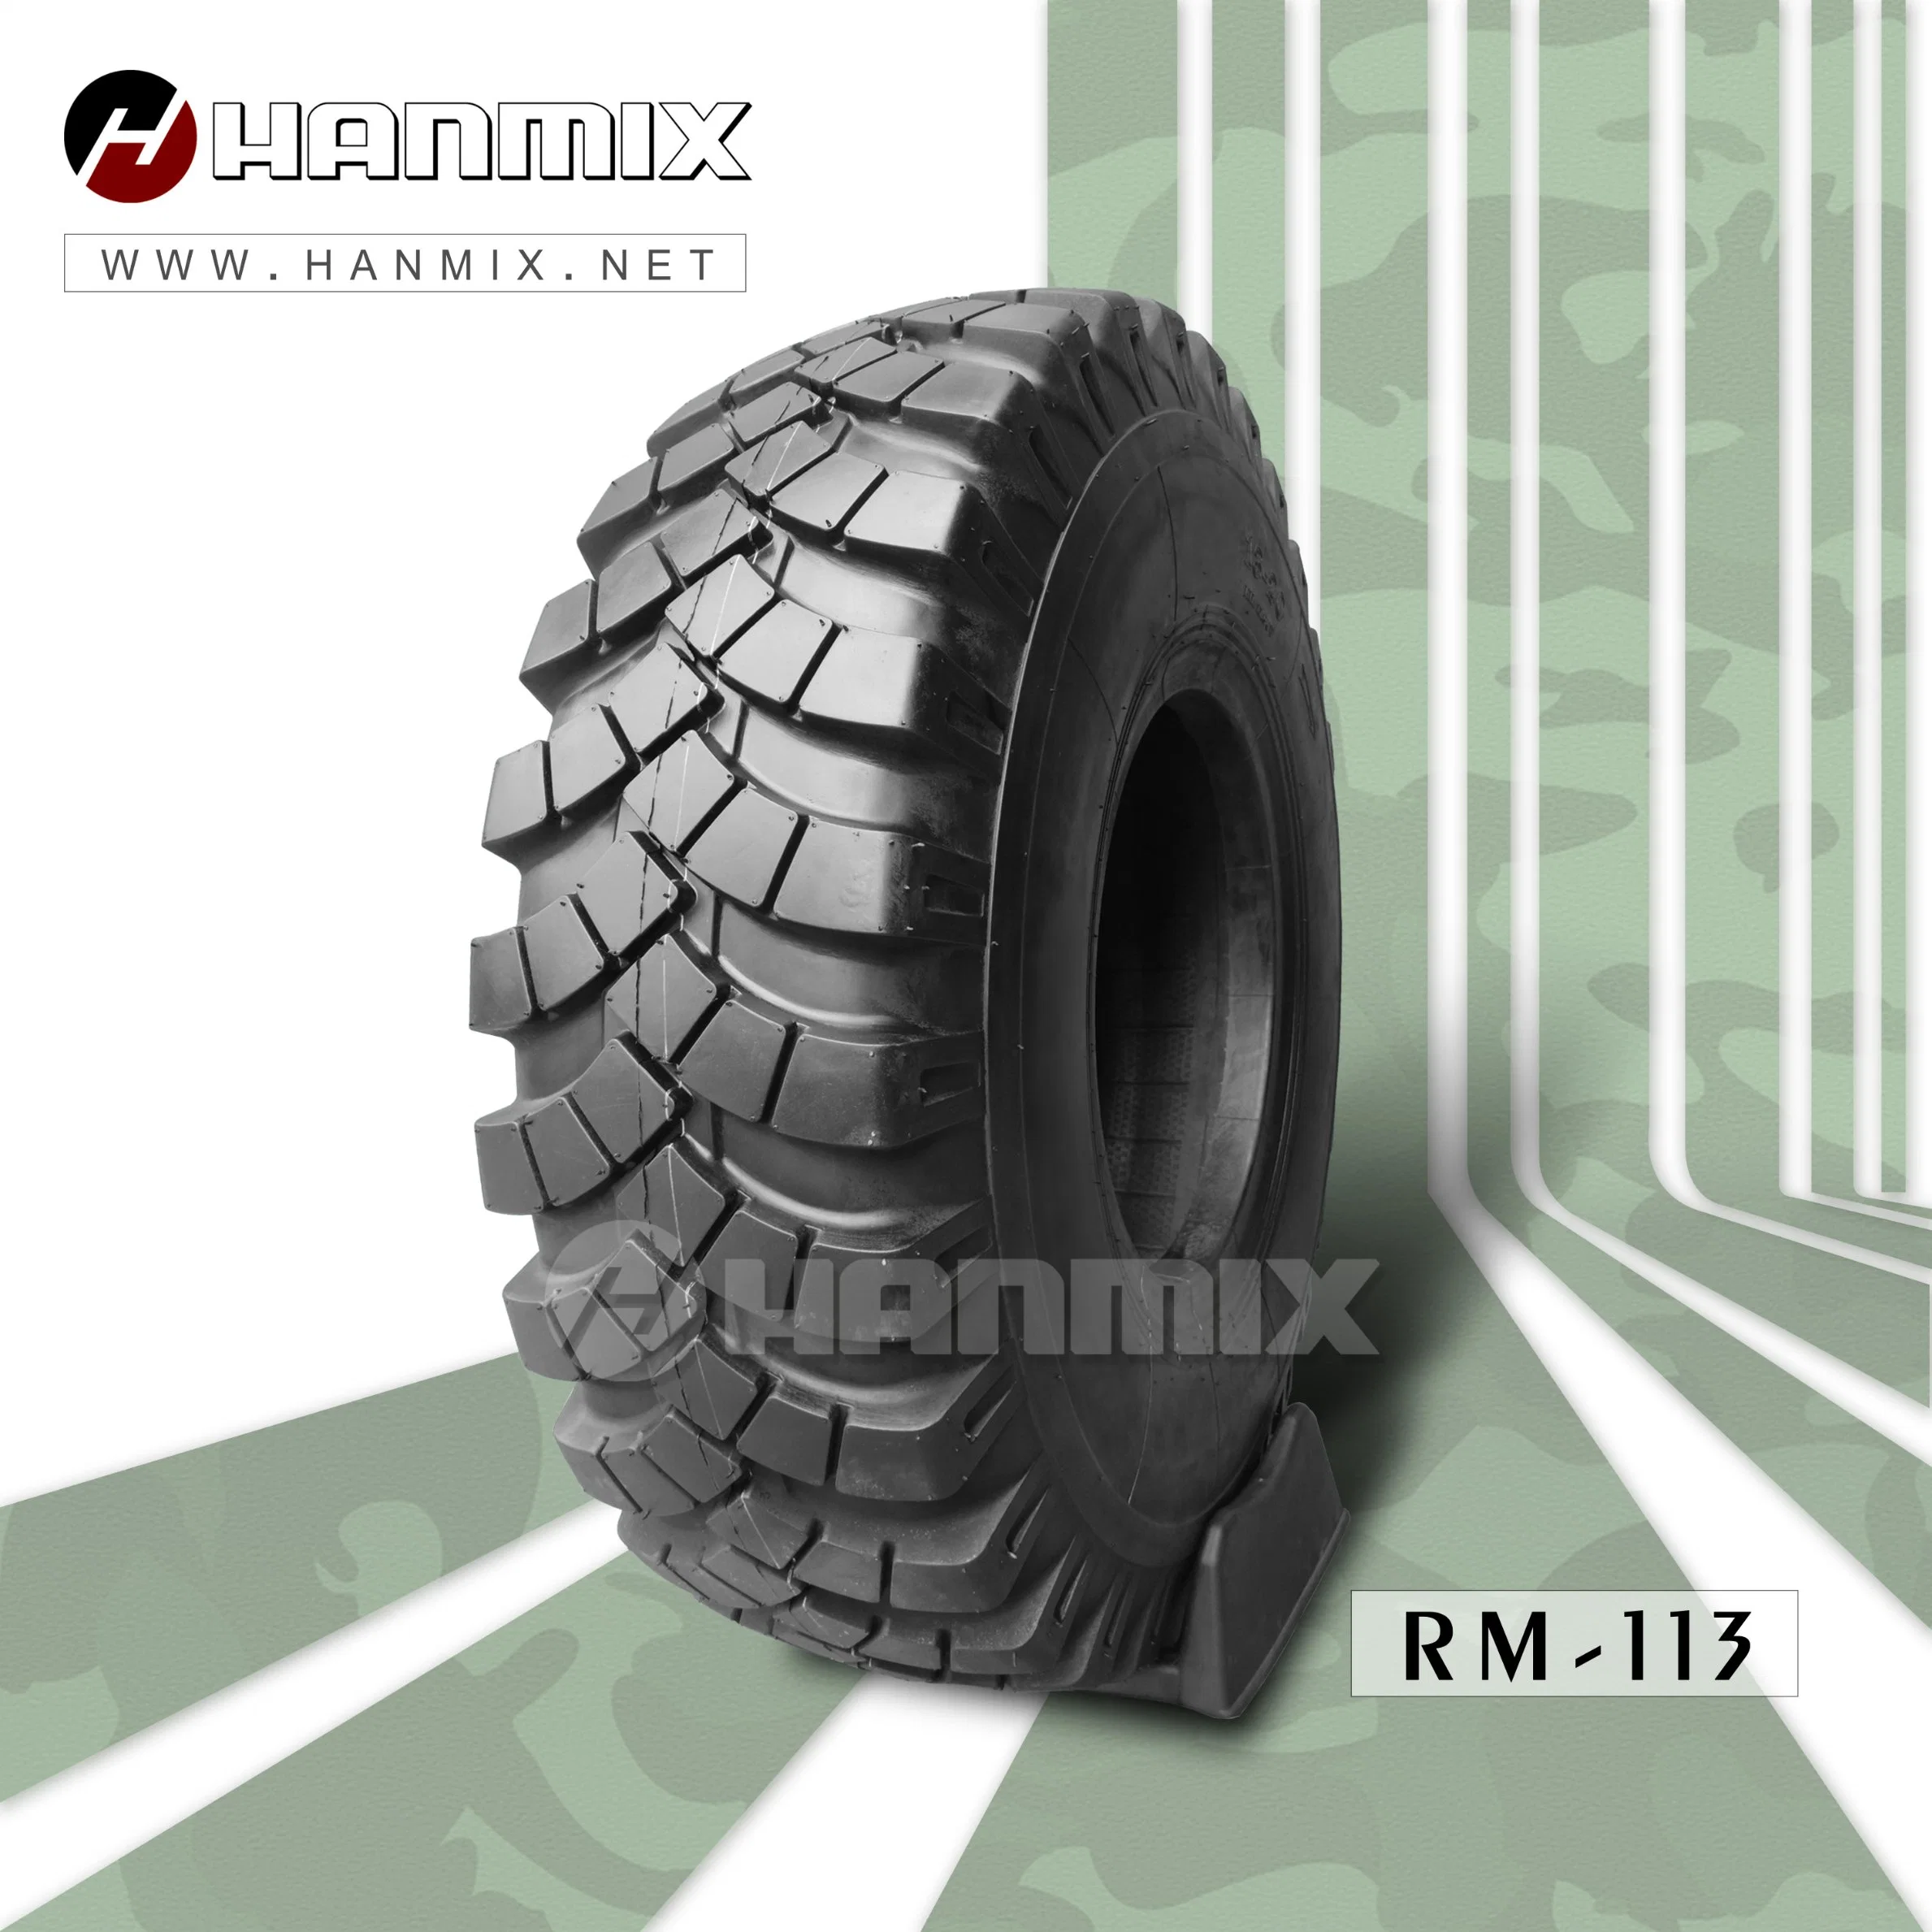 Neumático militar Hanmix camión radial camión neumático pesado camión ligero Neumático Cross Country neumático 13-20